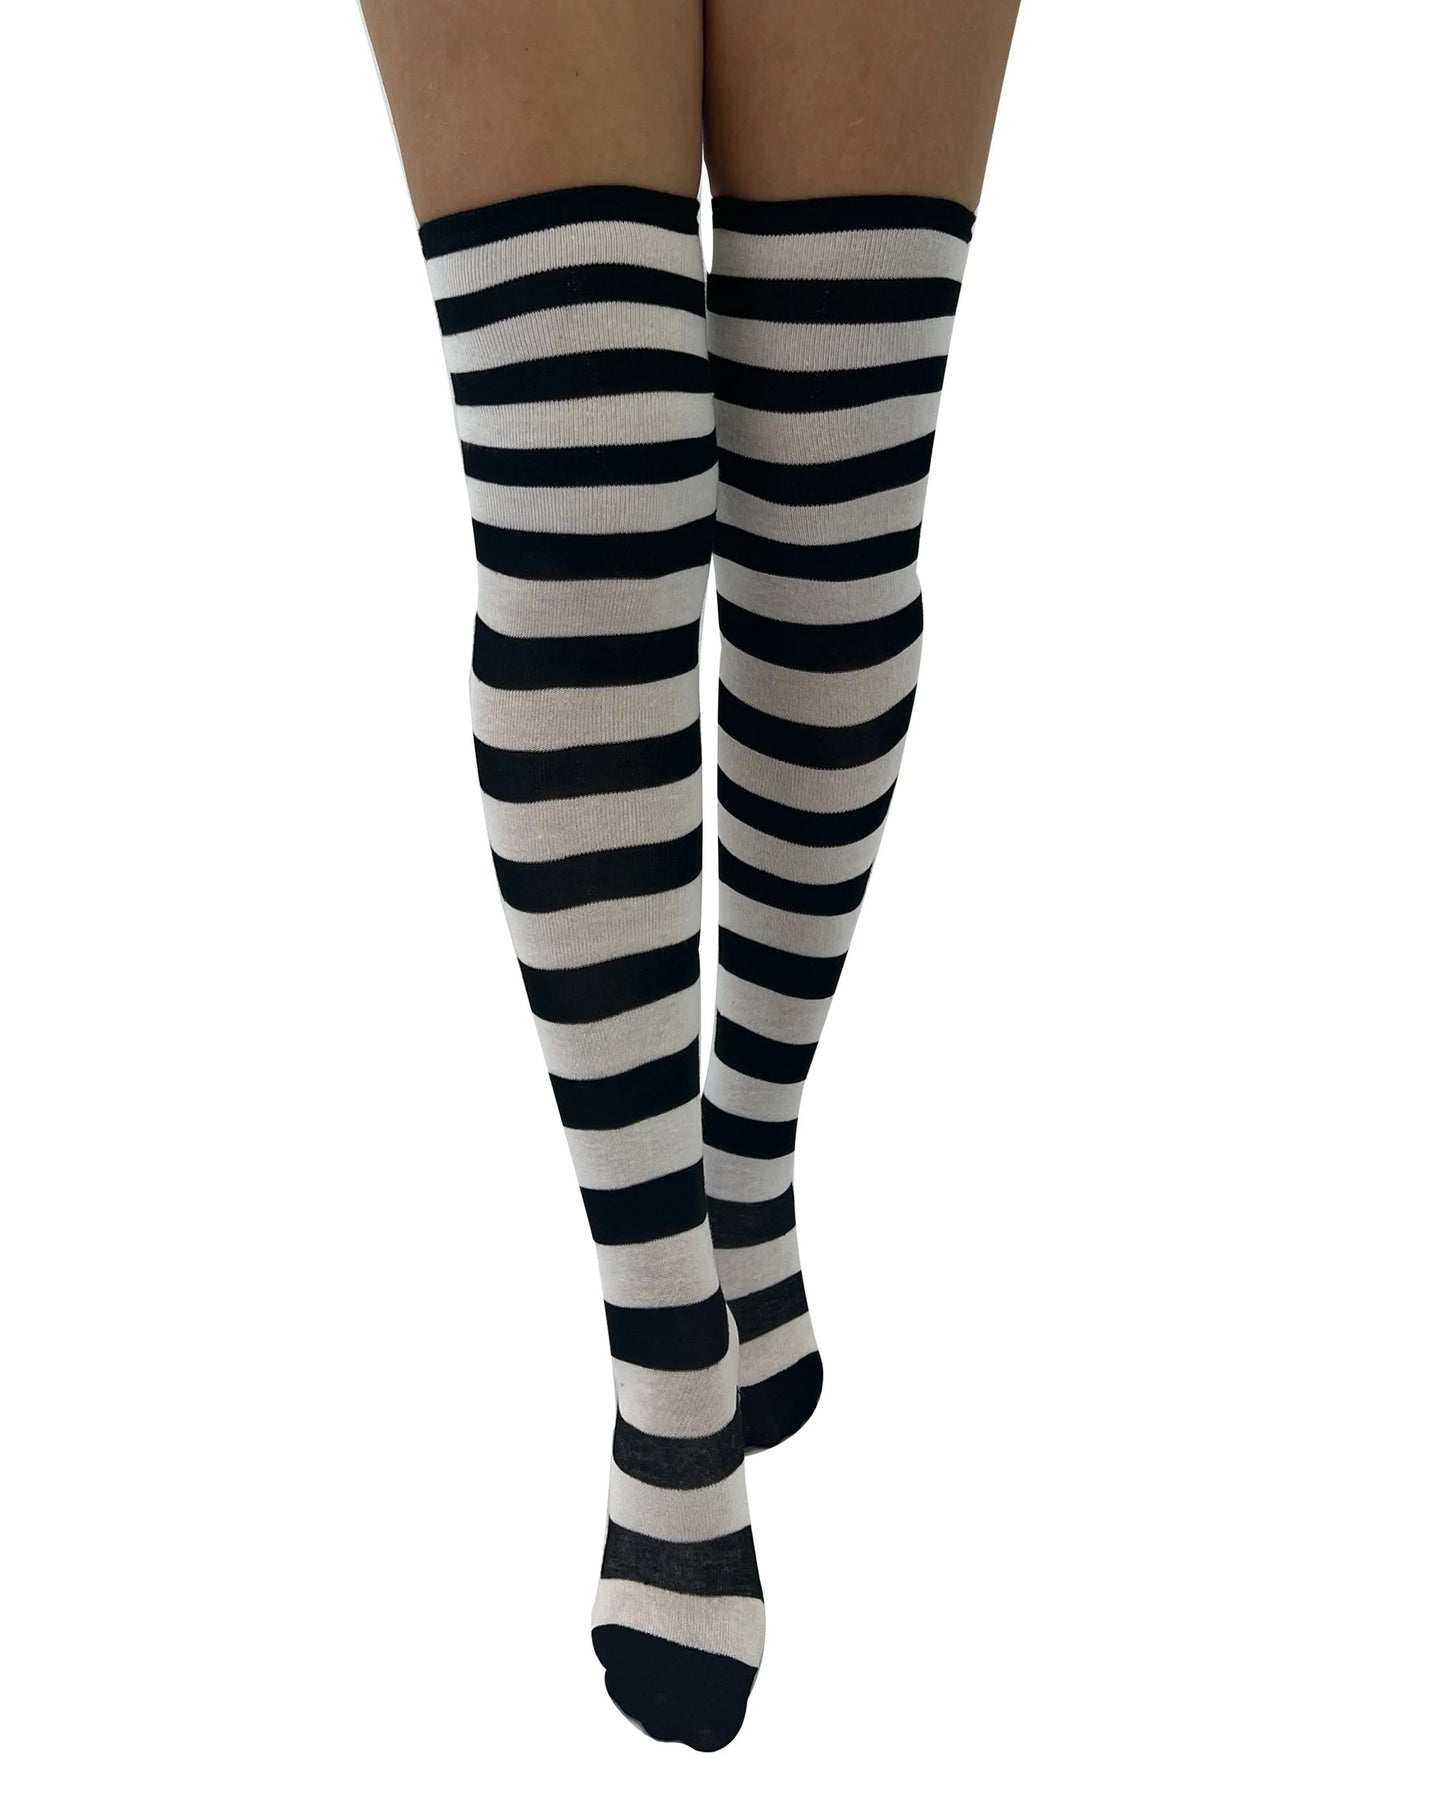 Pamela Mann Over-Knee Paw Socks - Black and white horizontal striped over the knee cotton socks.